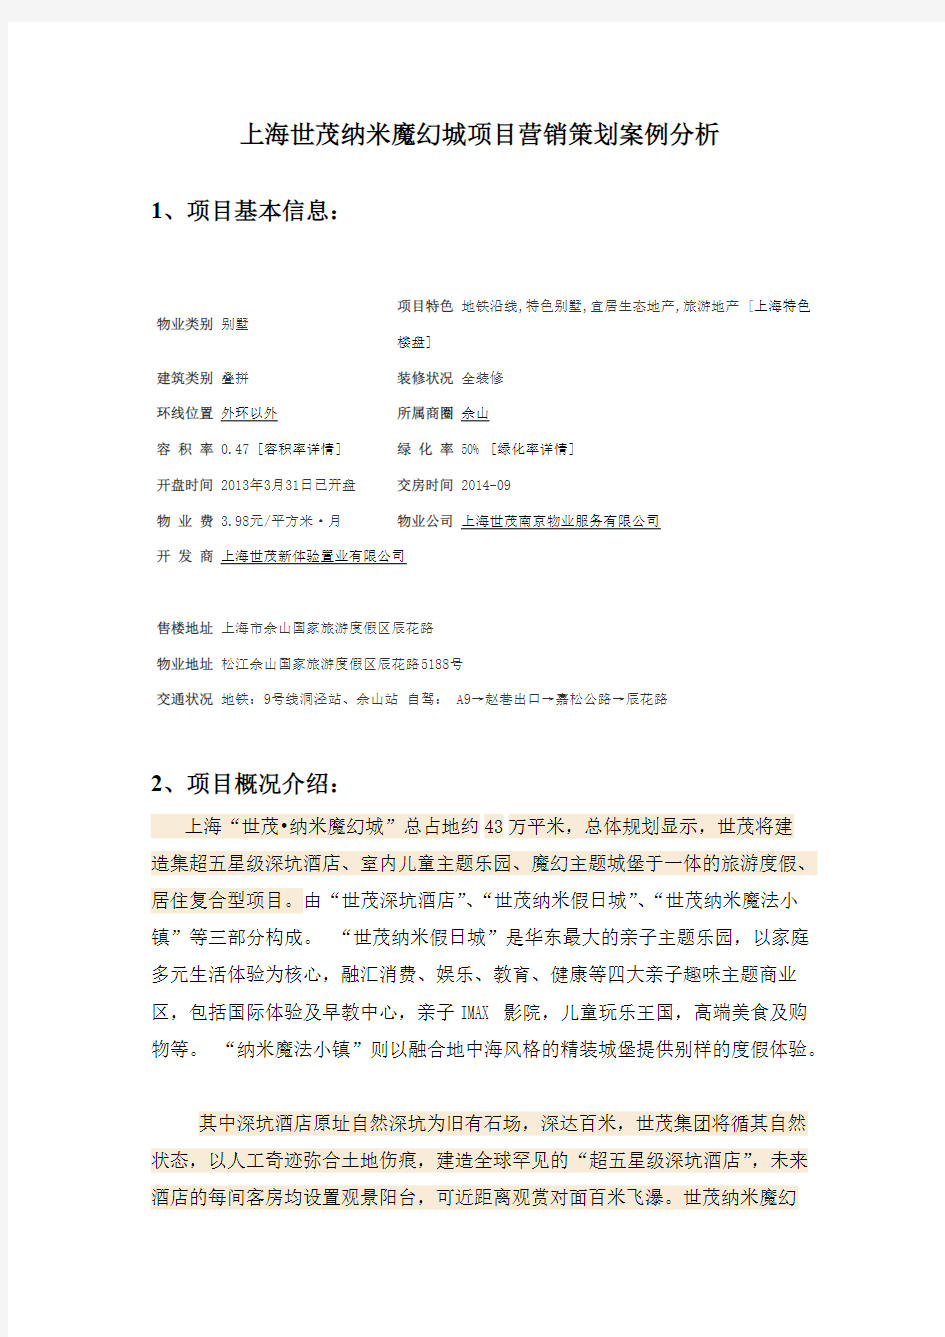 上海世茂纳米魔幻城项目营销策划案例分析